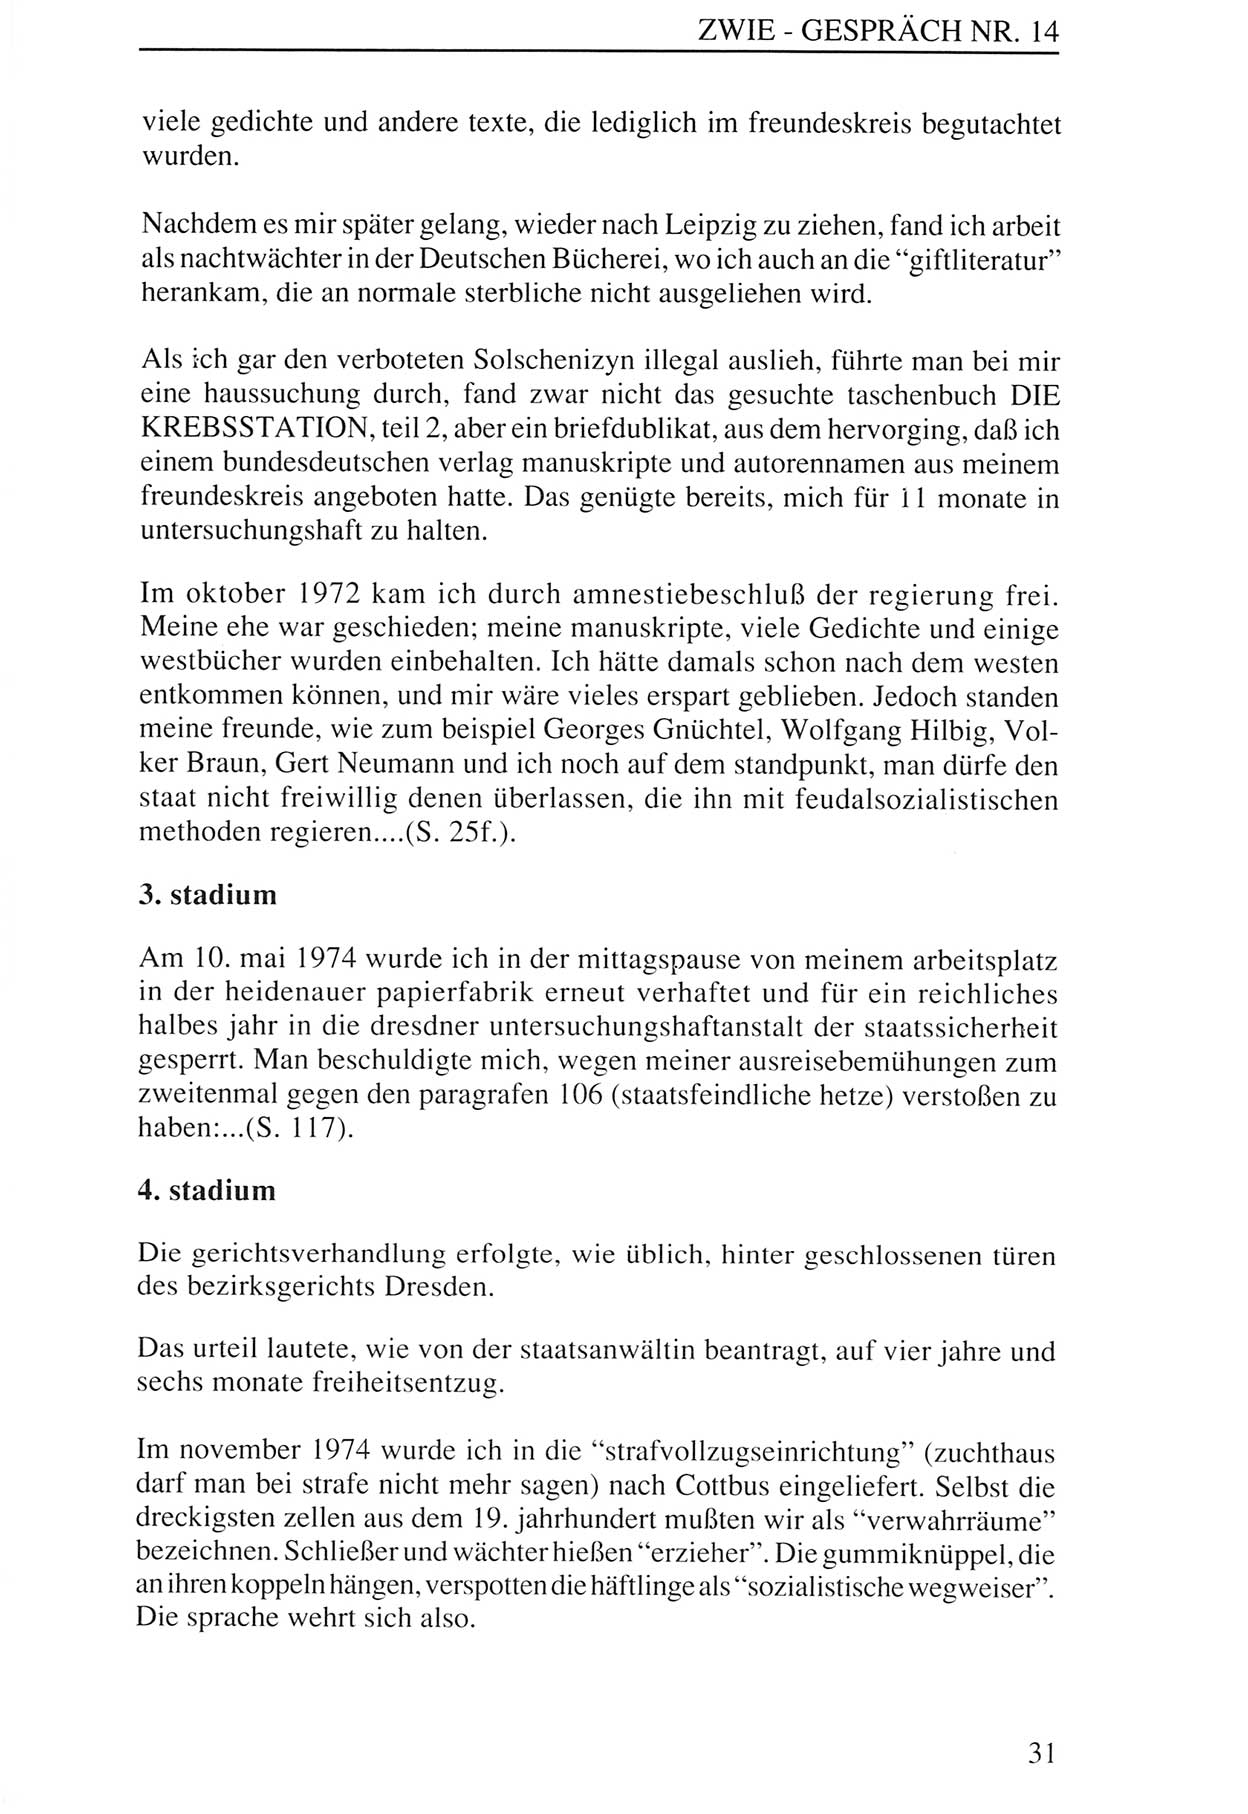 Zwie-Gespräch, Beiträge zur Aufarbeitung der Staatssicherheits-Vergangenheit [Deutsche Demokratische Republik (DDR)], Ausgabe Nr. 14, Berlin 1993, Seite 31 (Zwie-Gespr. Ausg. 14 1993, S. 31)